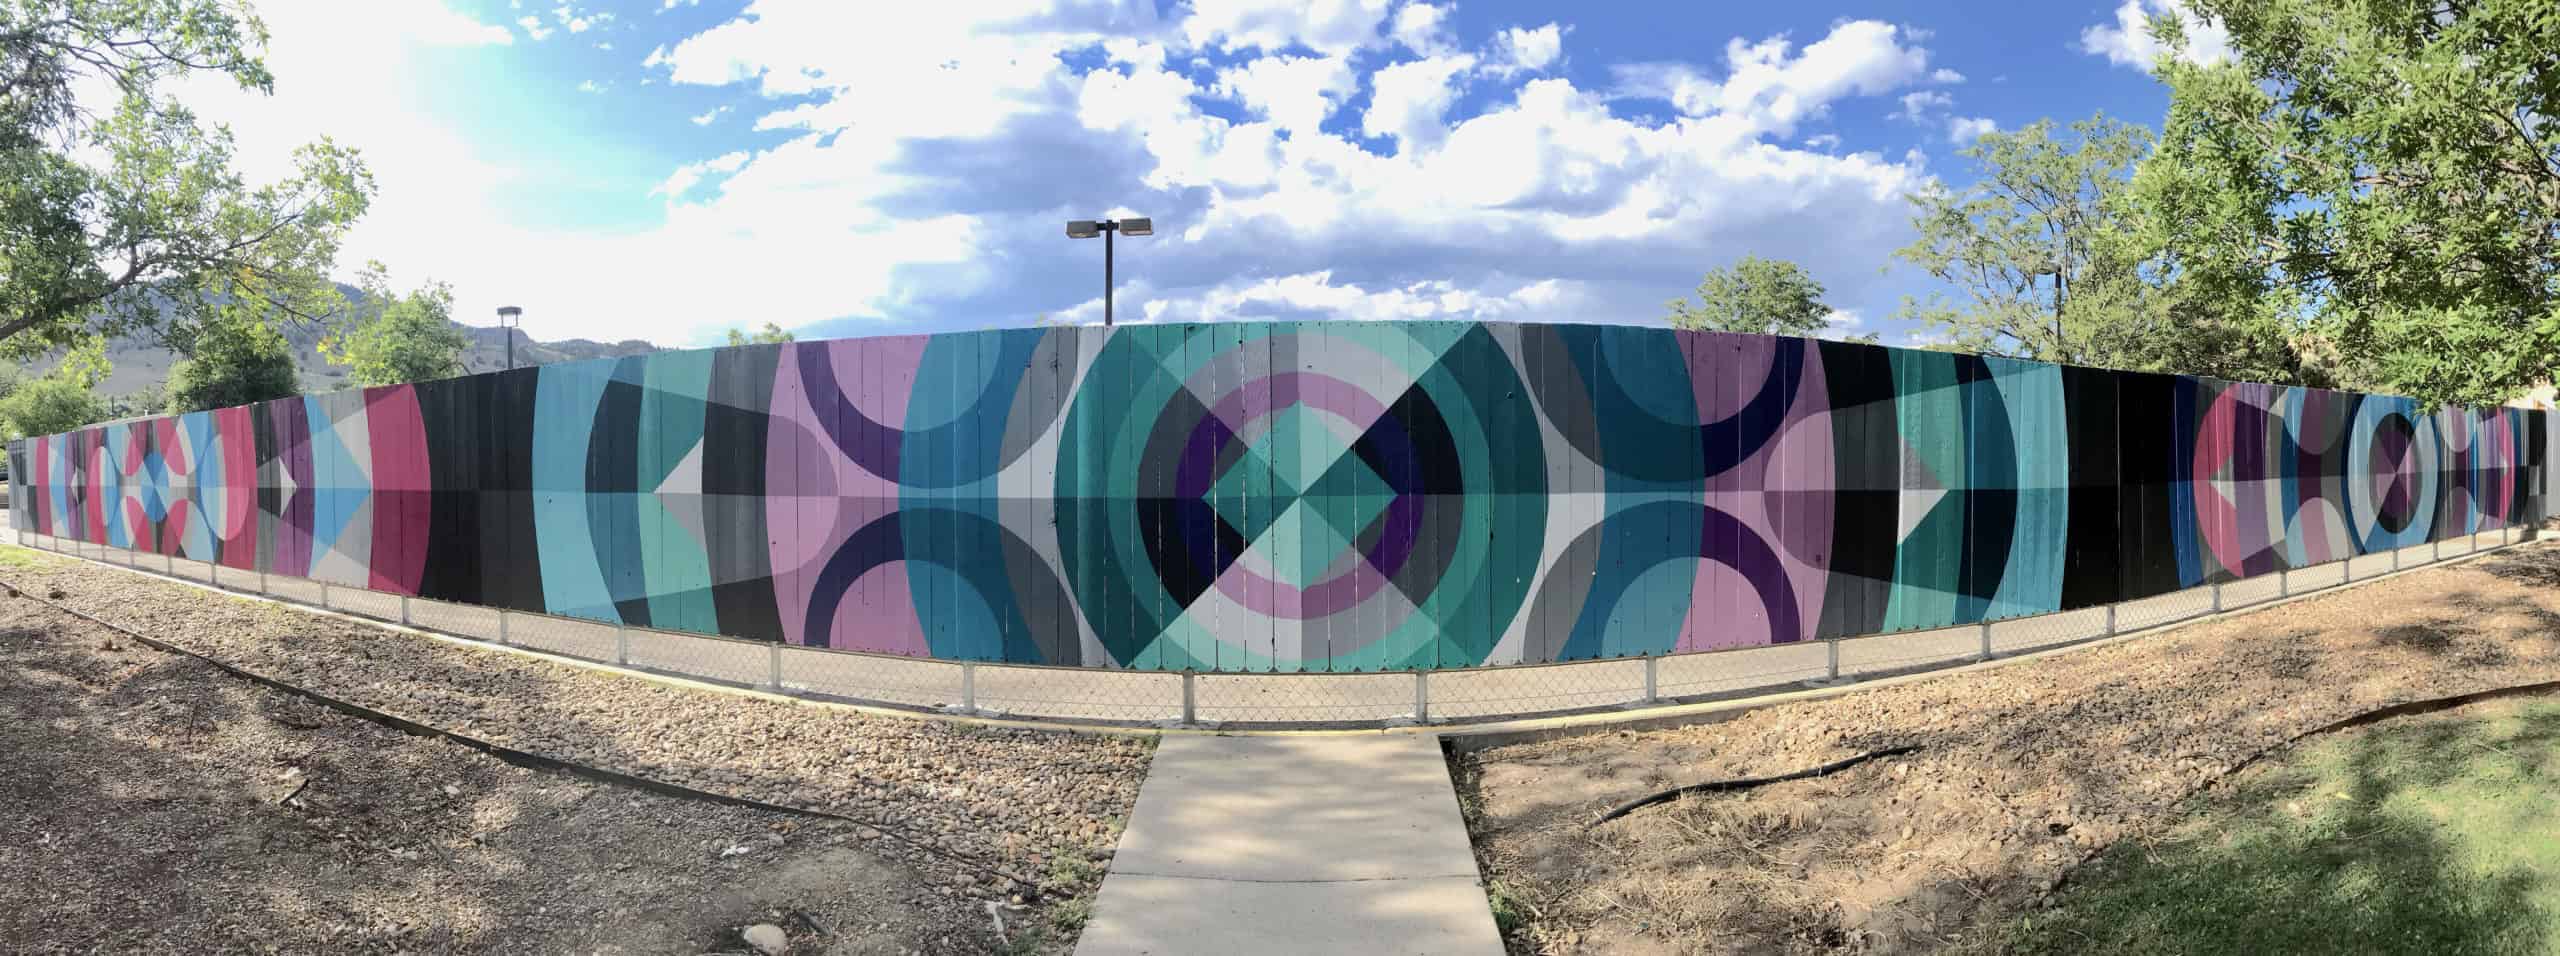 JasonT.Graves,Boulder,Murals,Street Art,Fence,Boulder Community Hospital